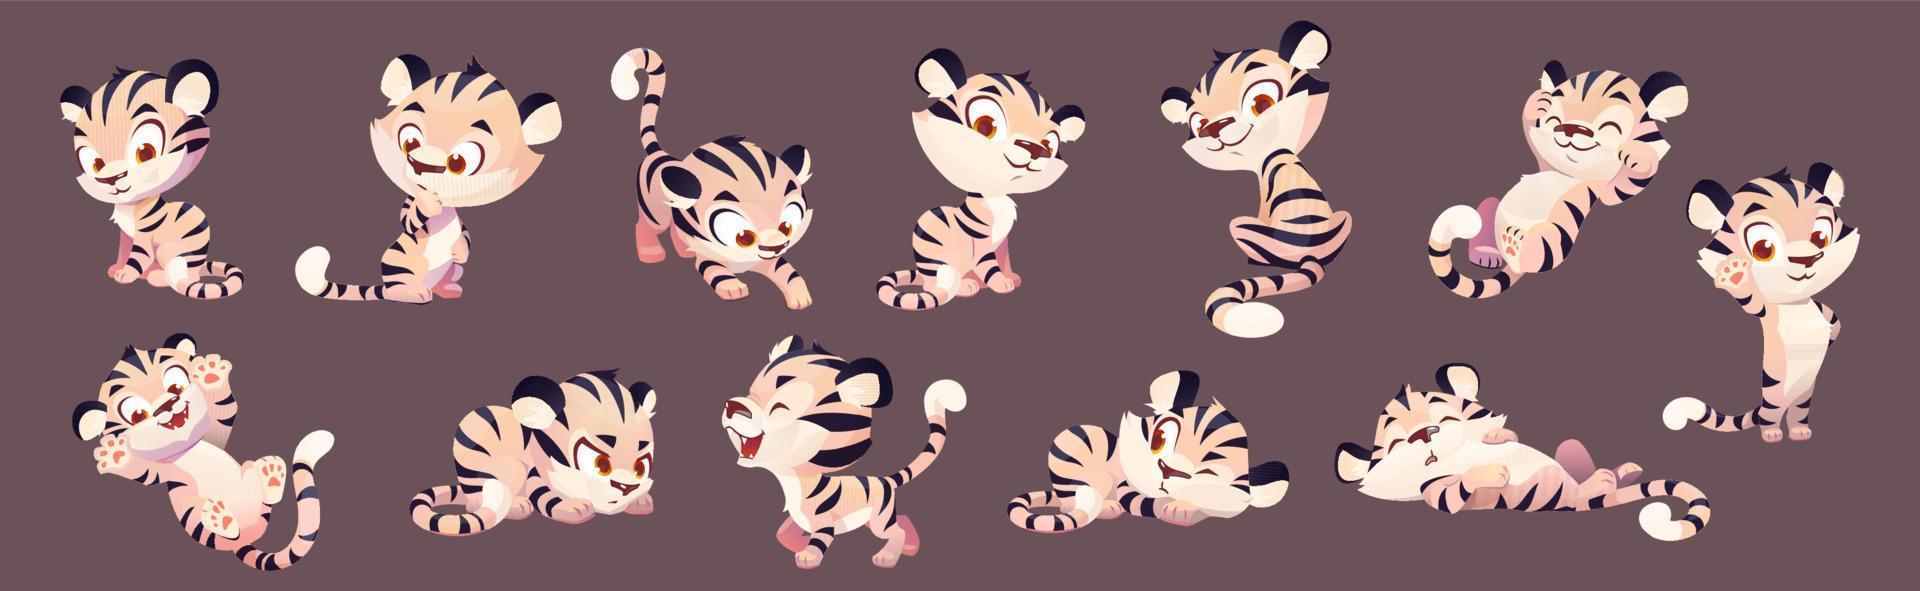 Adorable tiger cub cartoon animation vector set